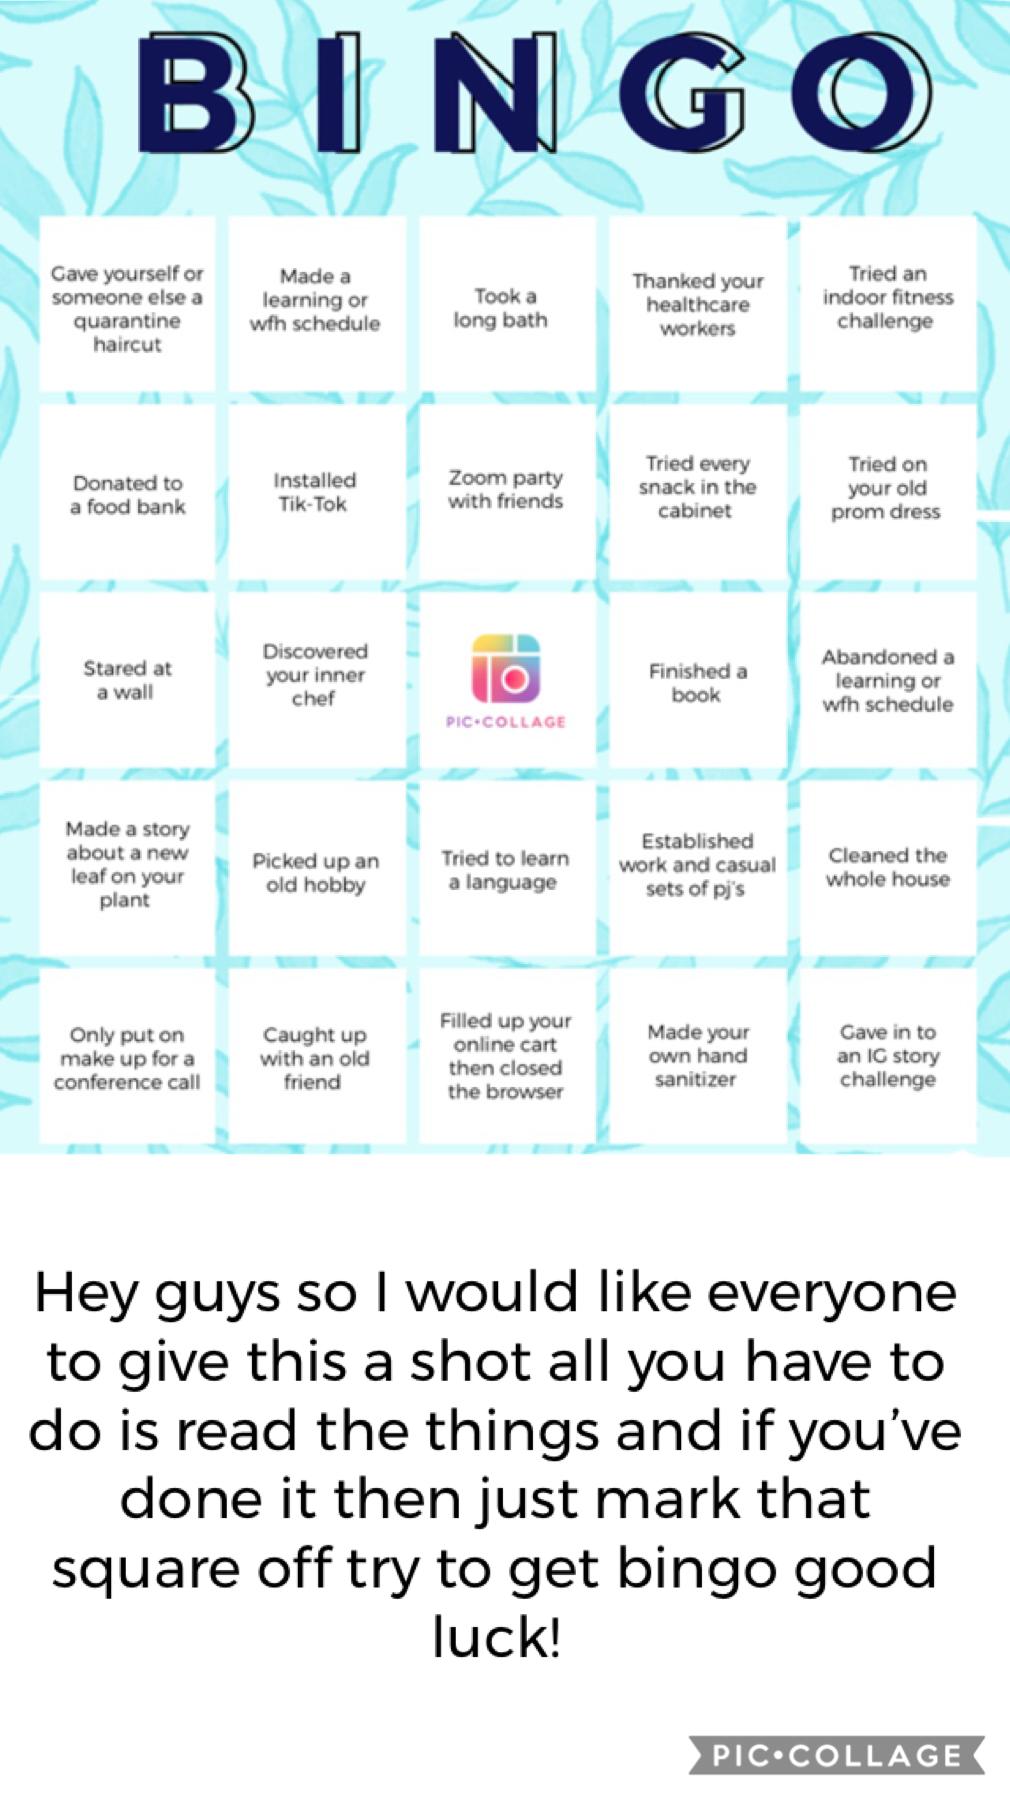 Bingo please give it a try 